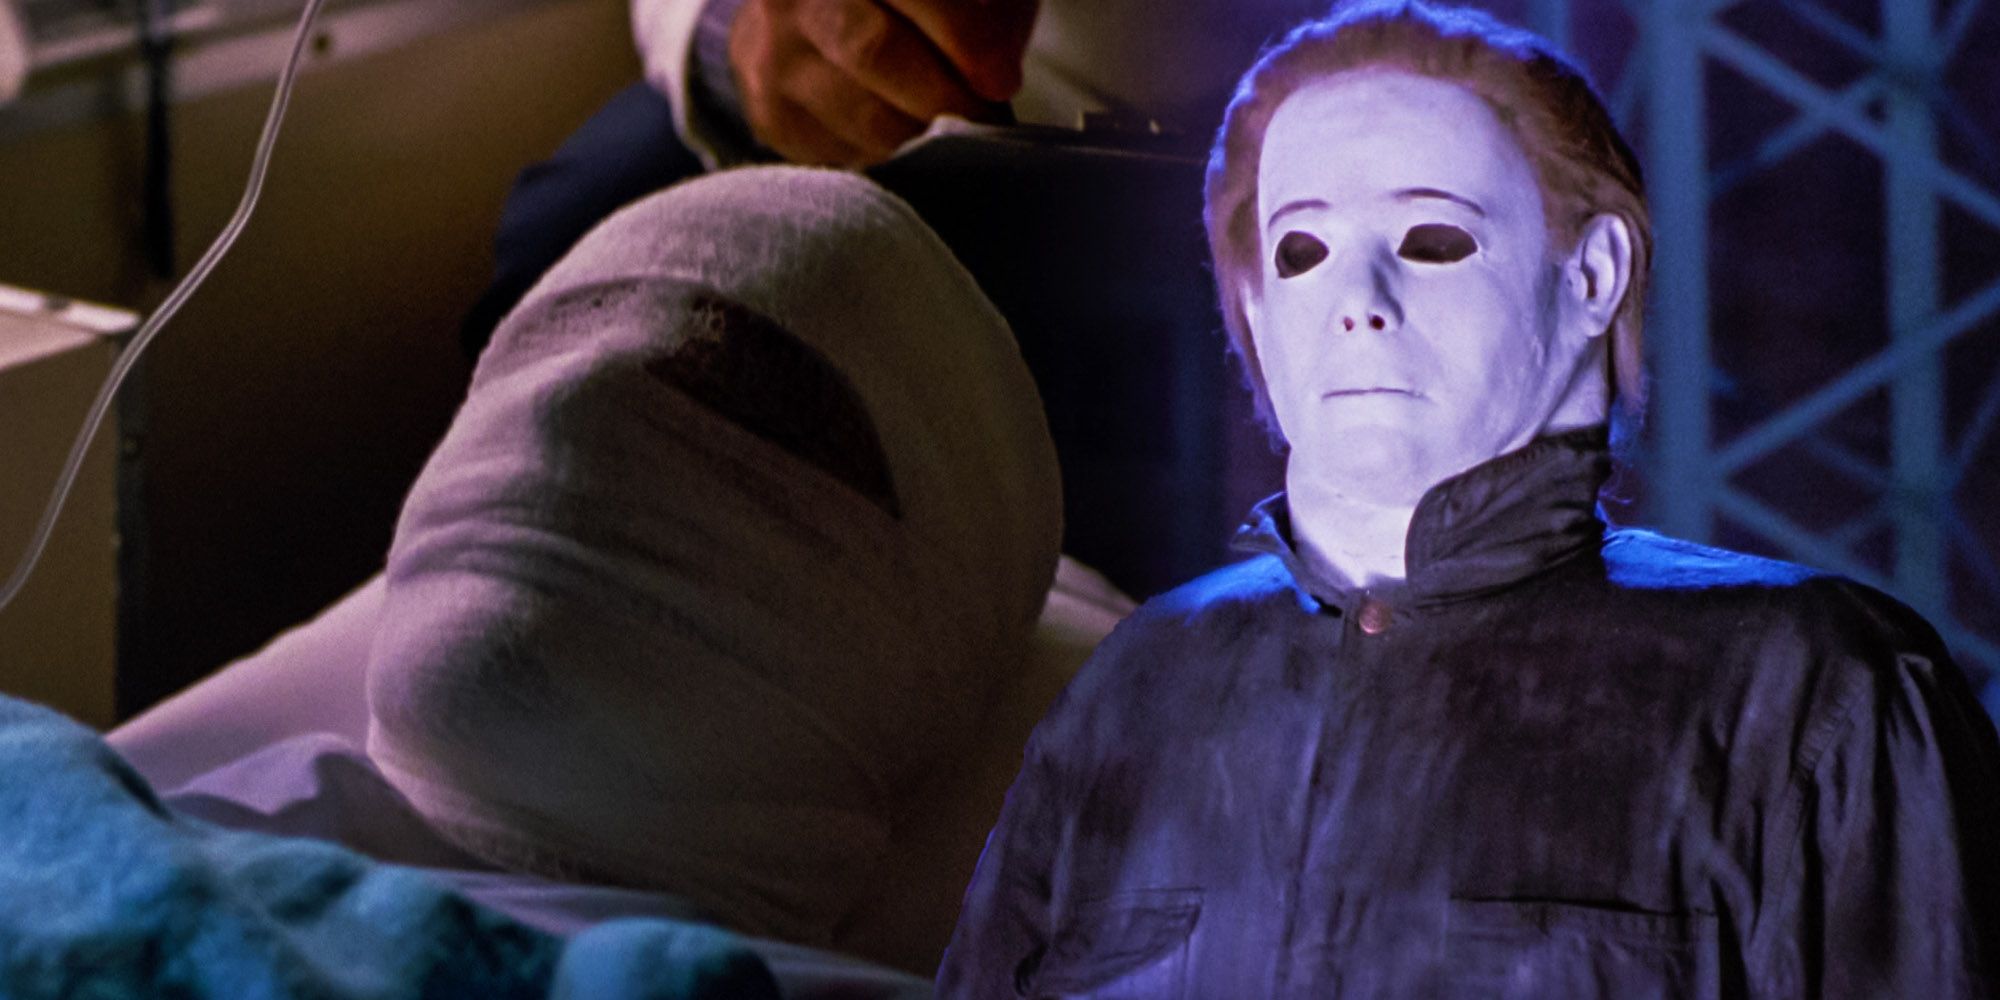 Michael myers halloween 4 mask